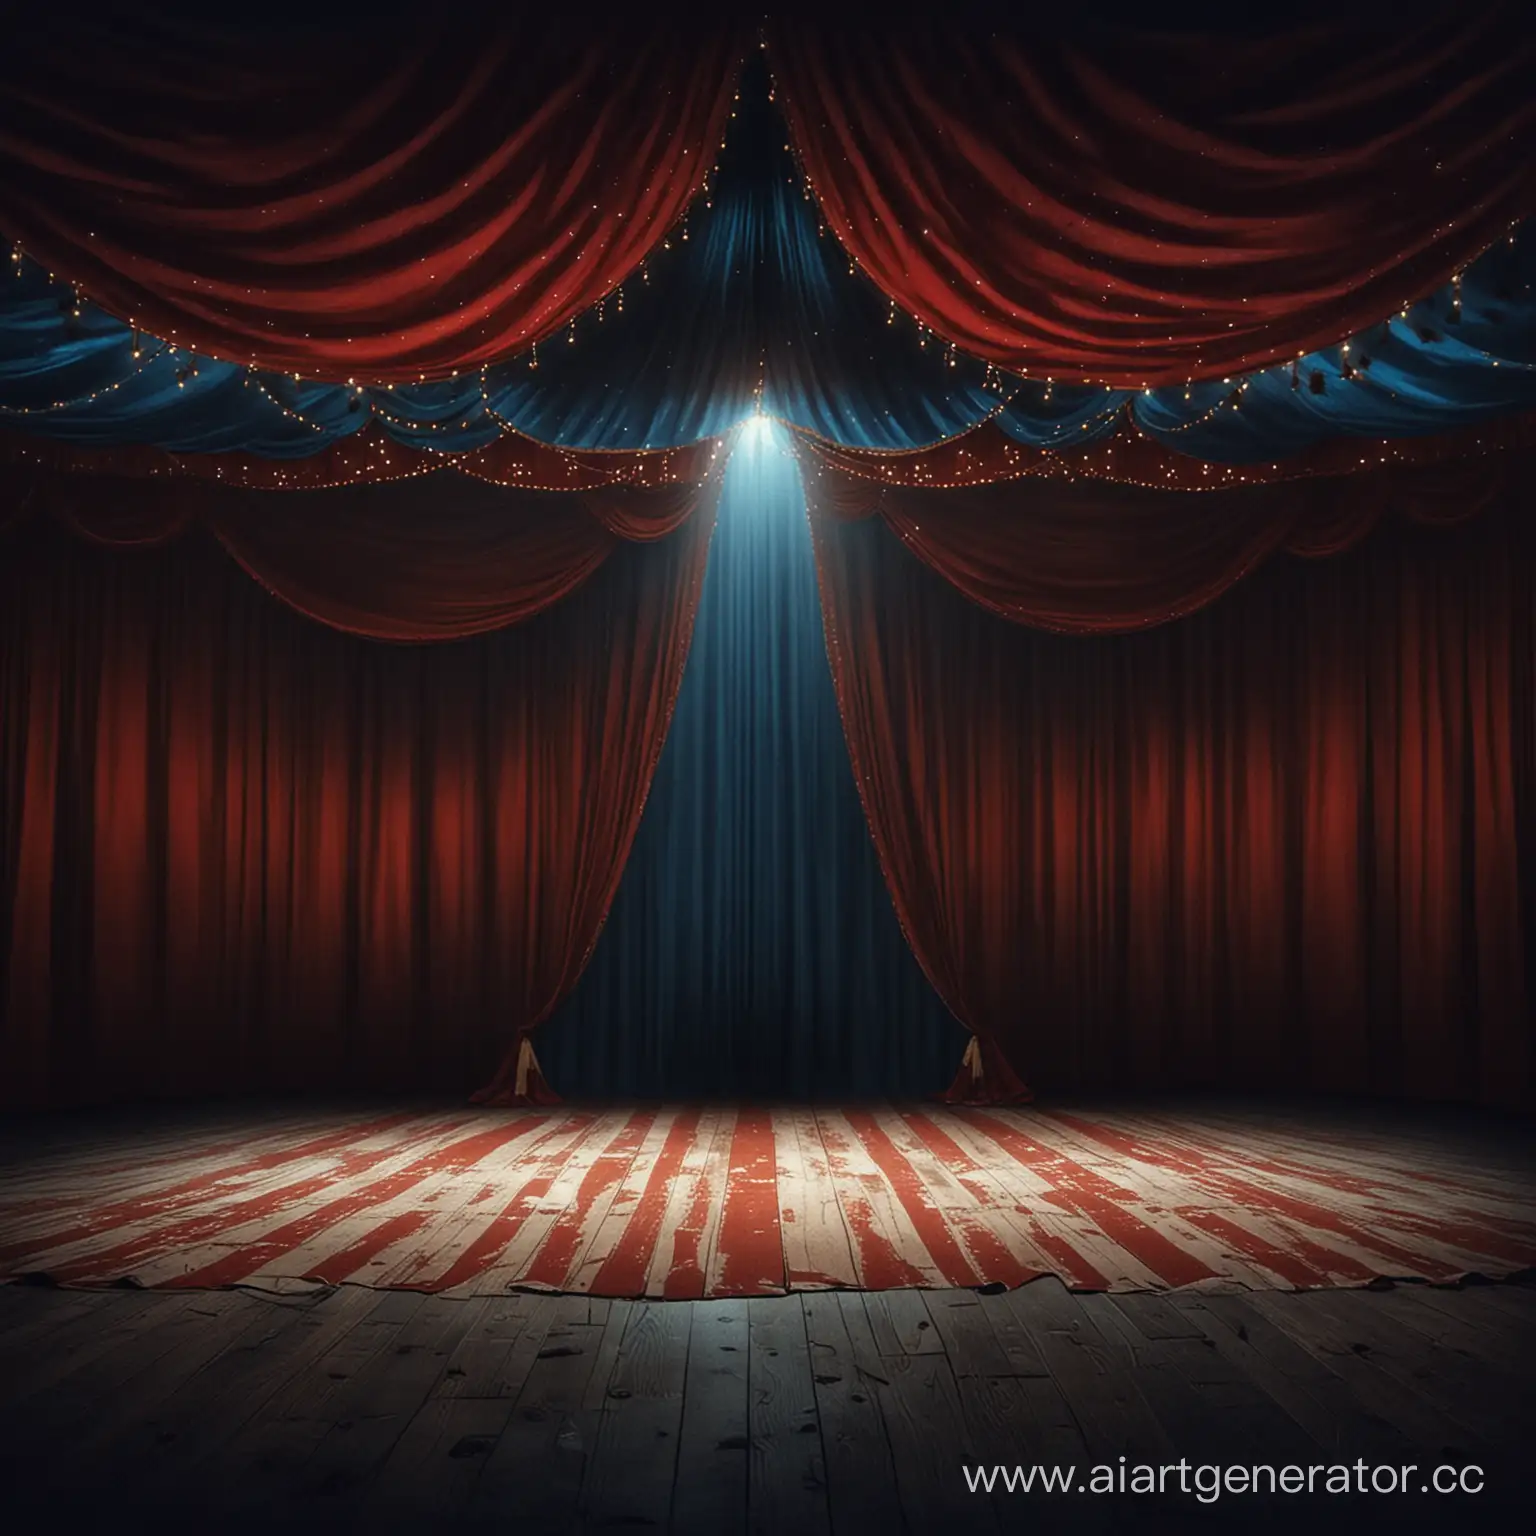 Фон темная сцена находящаяся  в шатре цирка, освещенная белыми синими и красными огнями, без людей и животных, имеет кулисы за которыми темно 